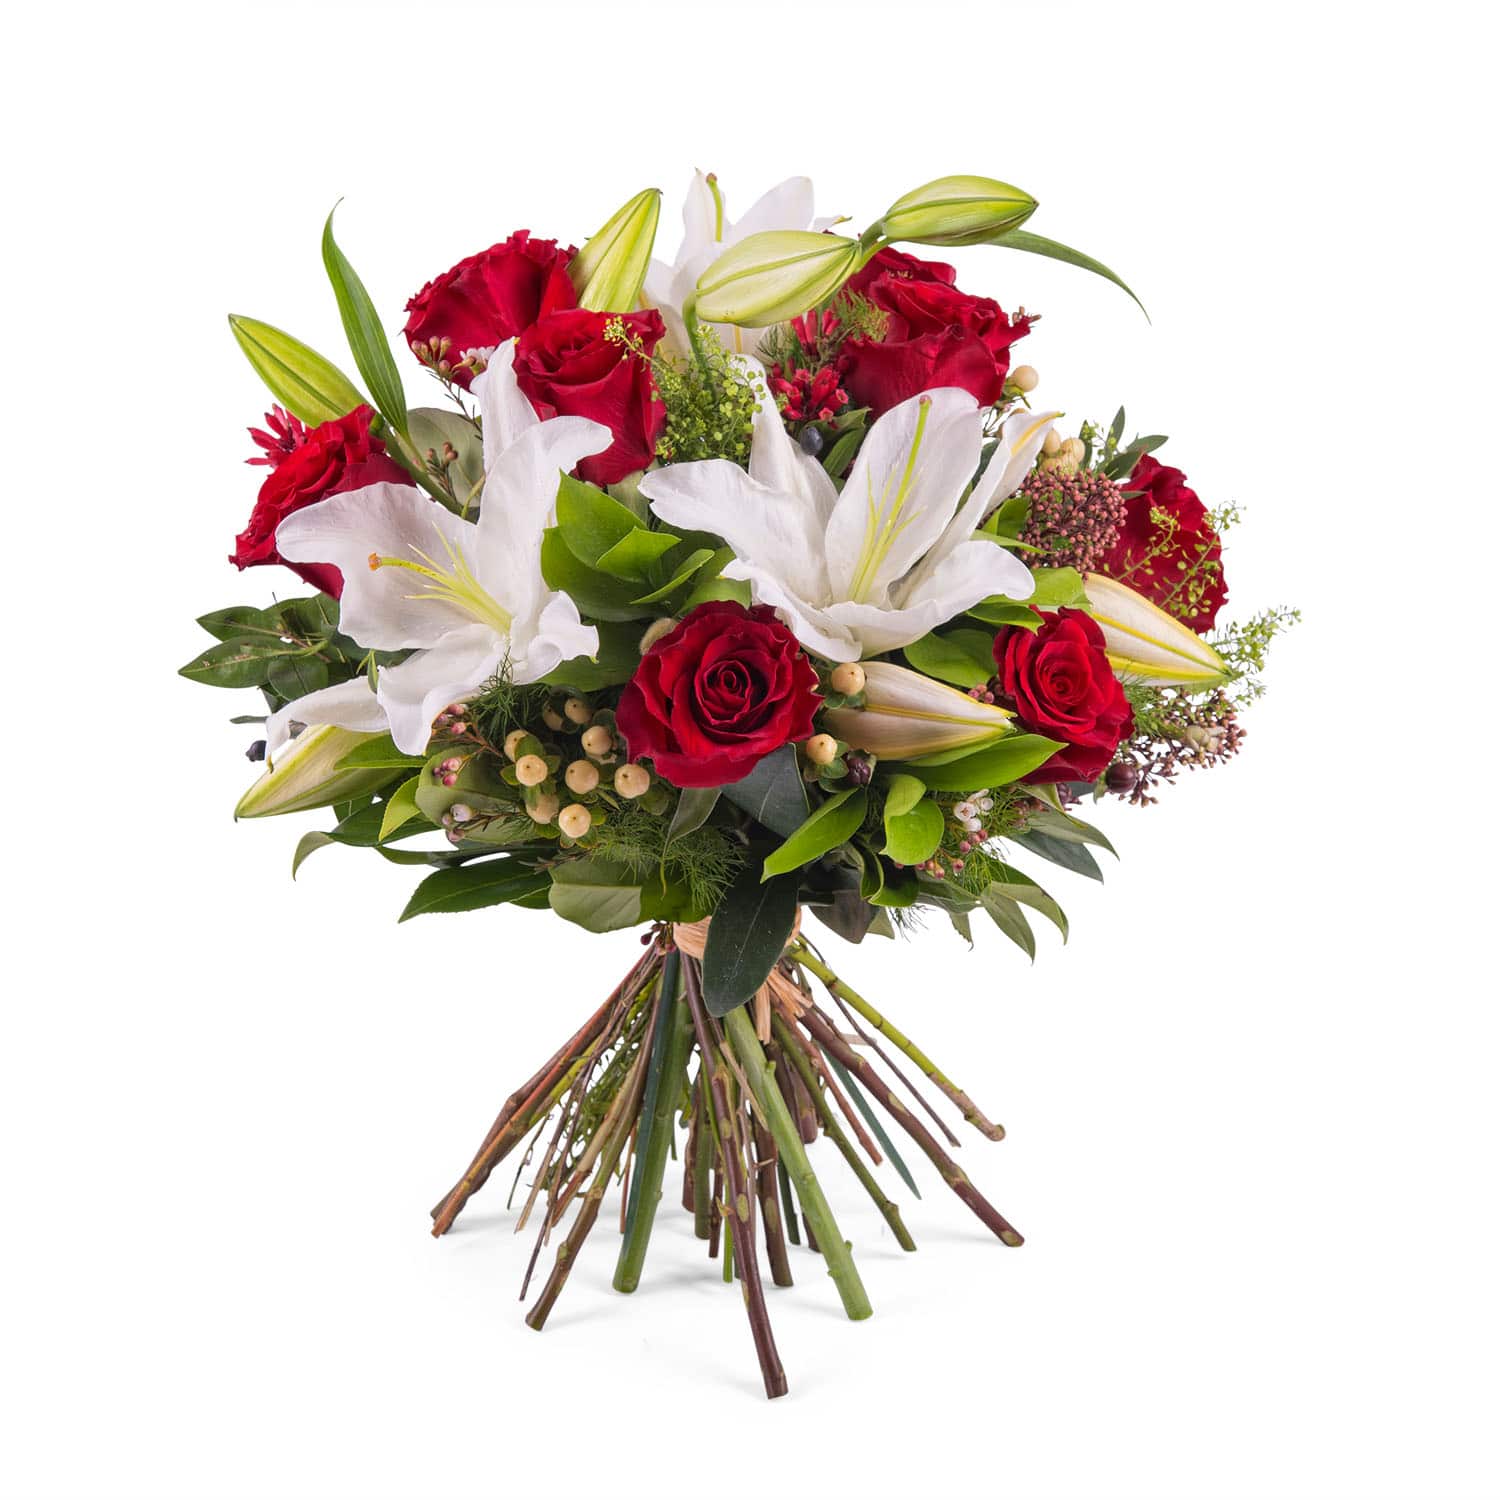 Descubra 48 kuva fleur de lys bouquet - Thptnganamst.edu.vn